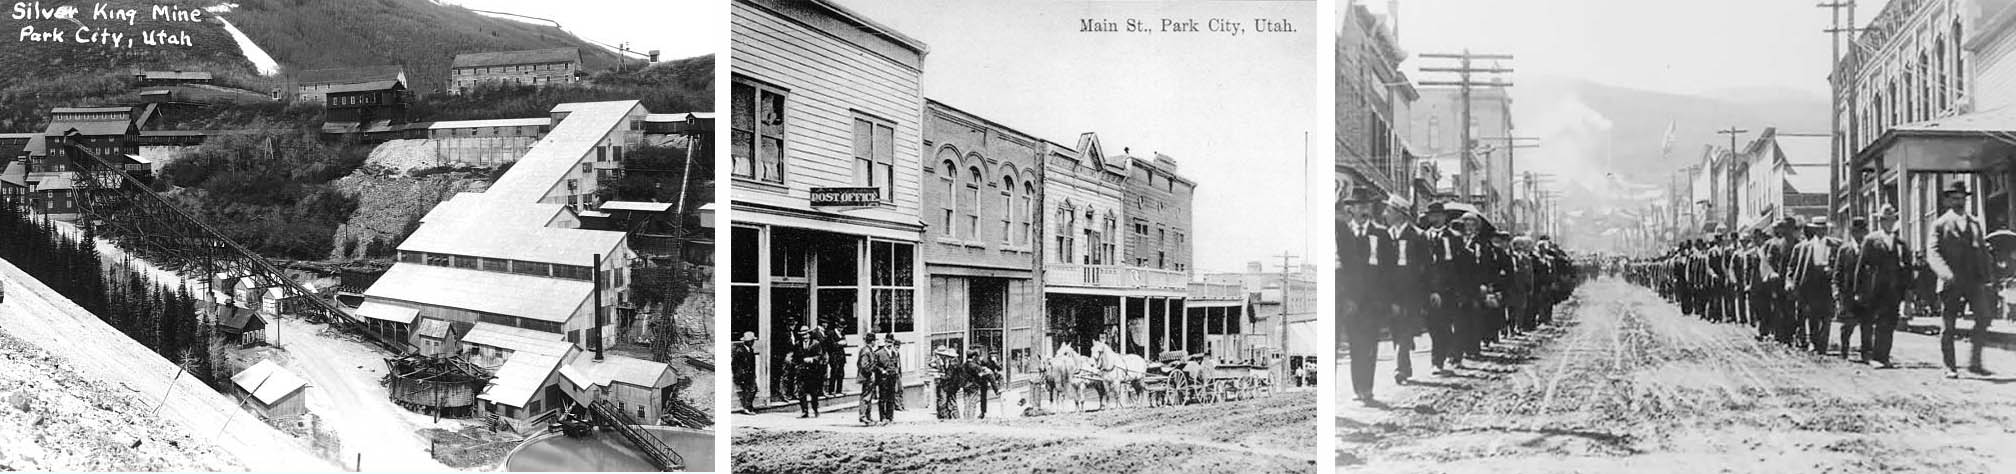 fotos históricas de park city em 1860